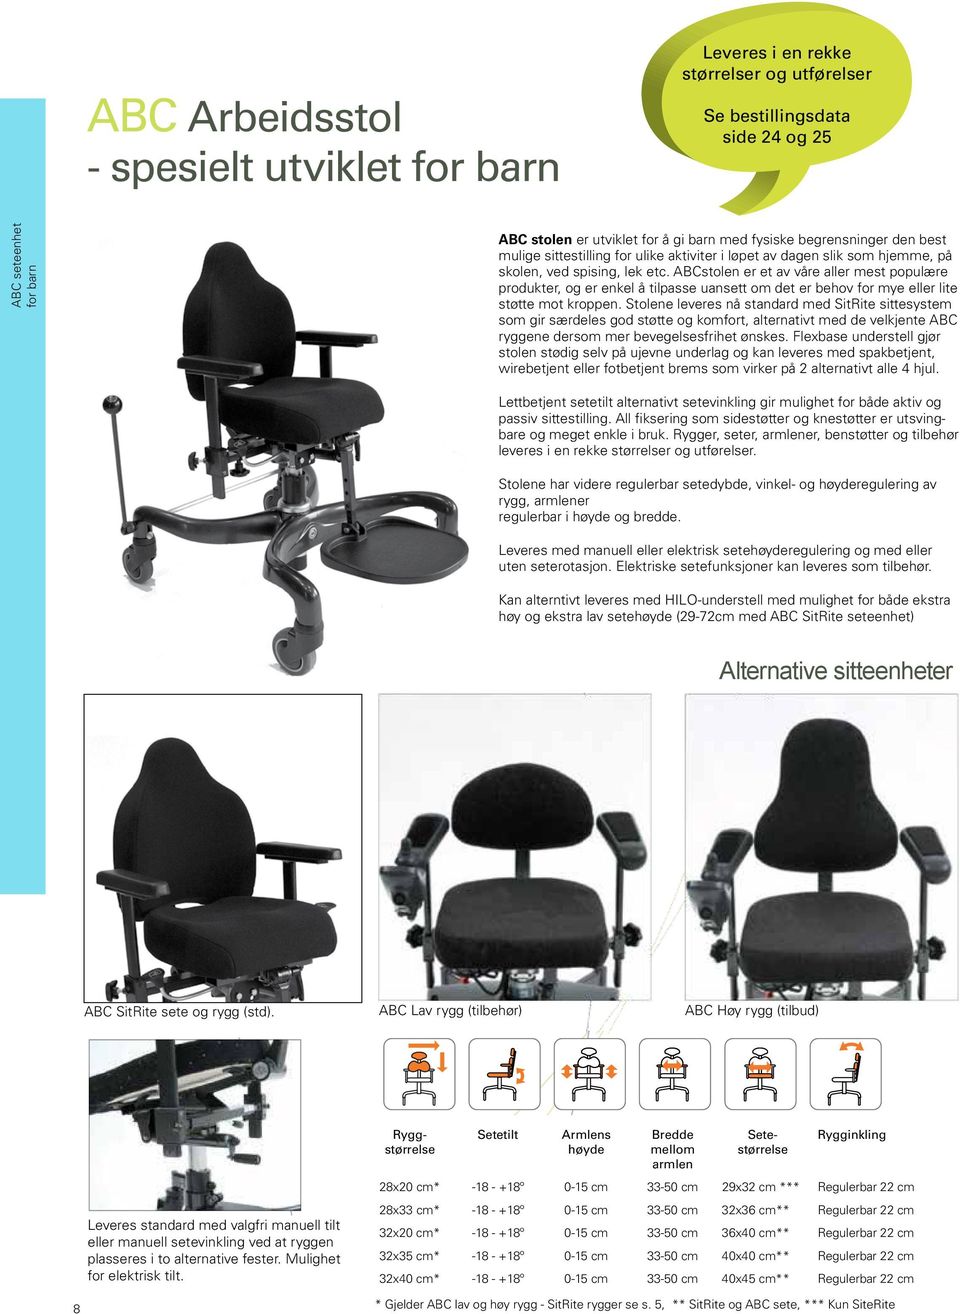 ABCstolen er et av våre aller mest populære produkter, og er enkel å tilpasse uansett om det er behov for mye eller lite støtte mot kroppen.